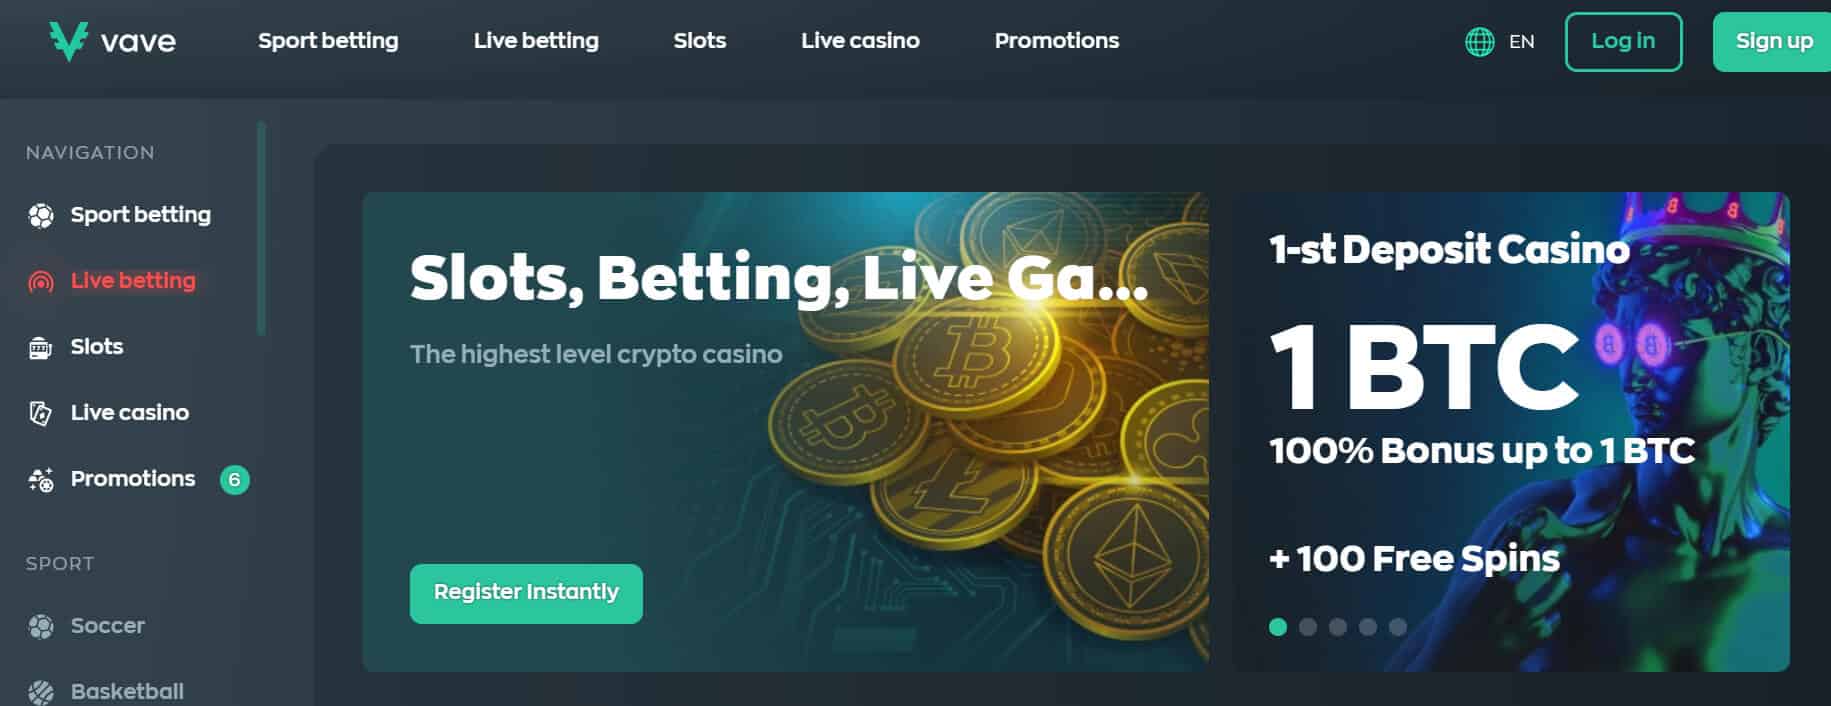 vave casino homepage